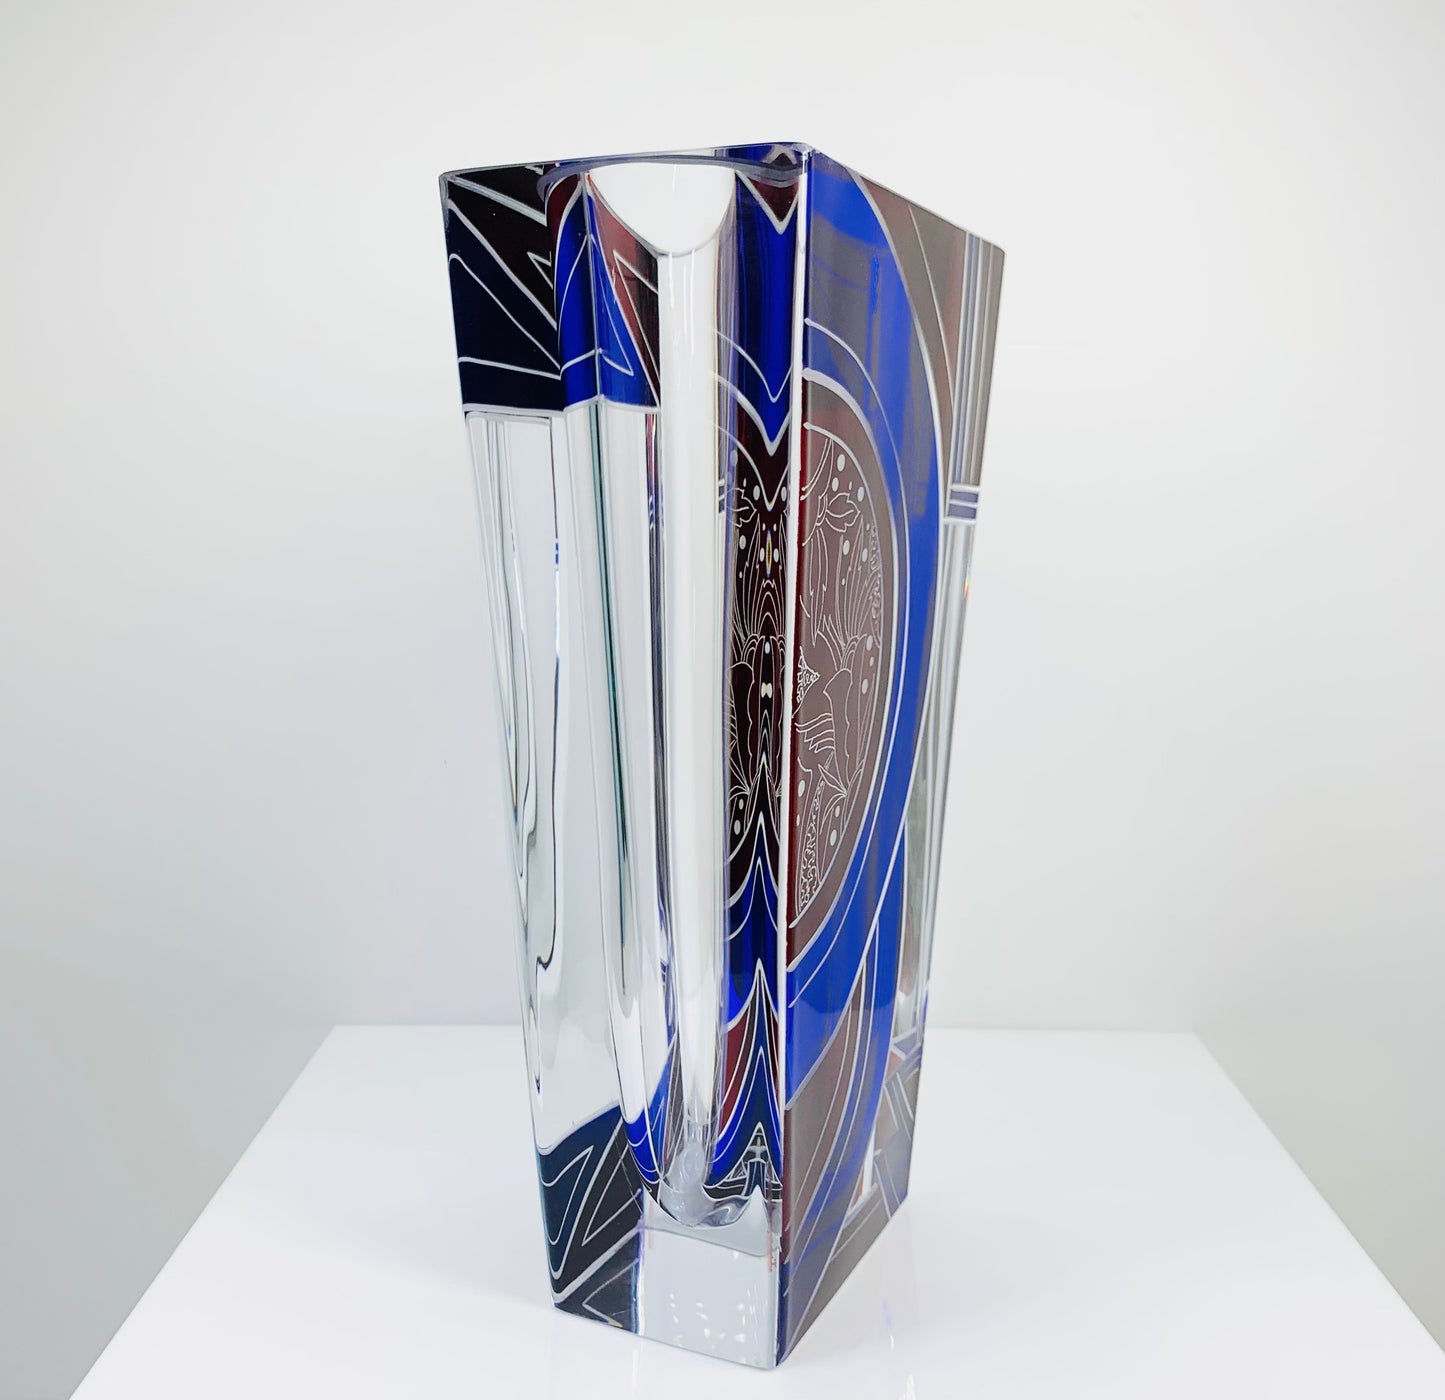 Antique Art Deco cobalt blue and ruby enamel glass vase by Karl Palda